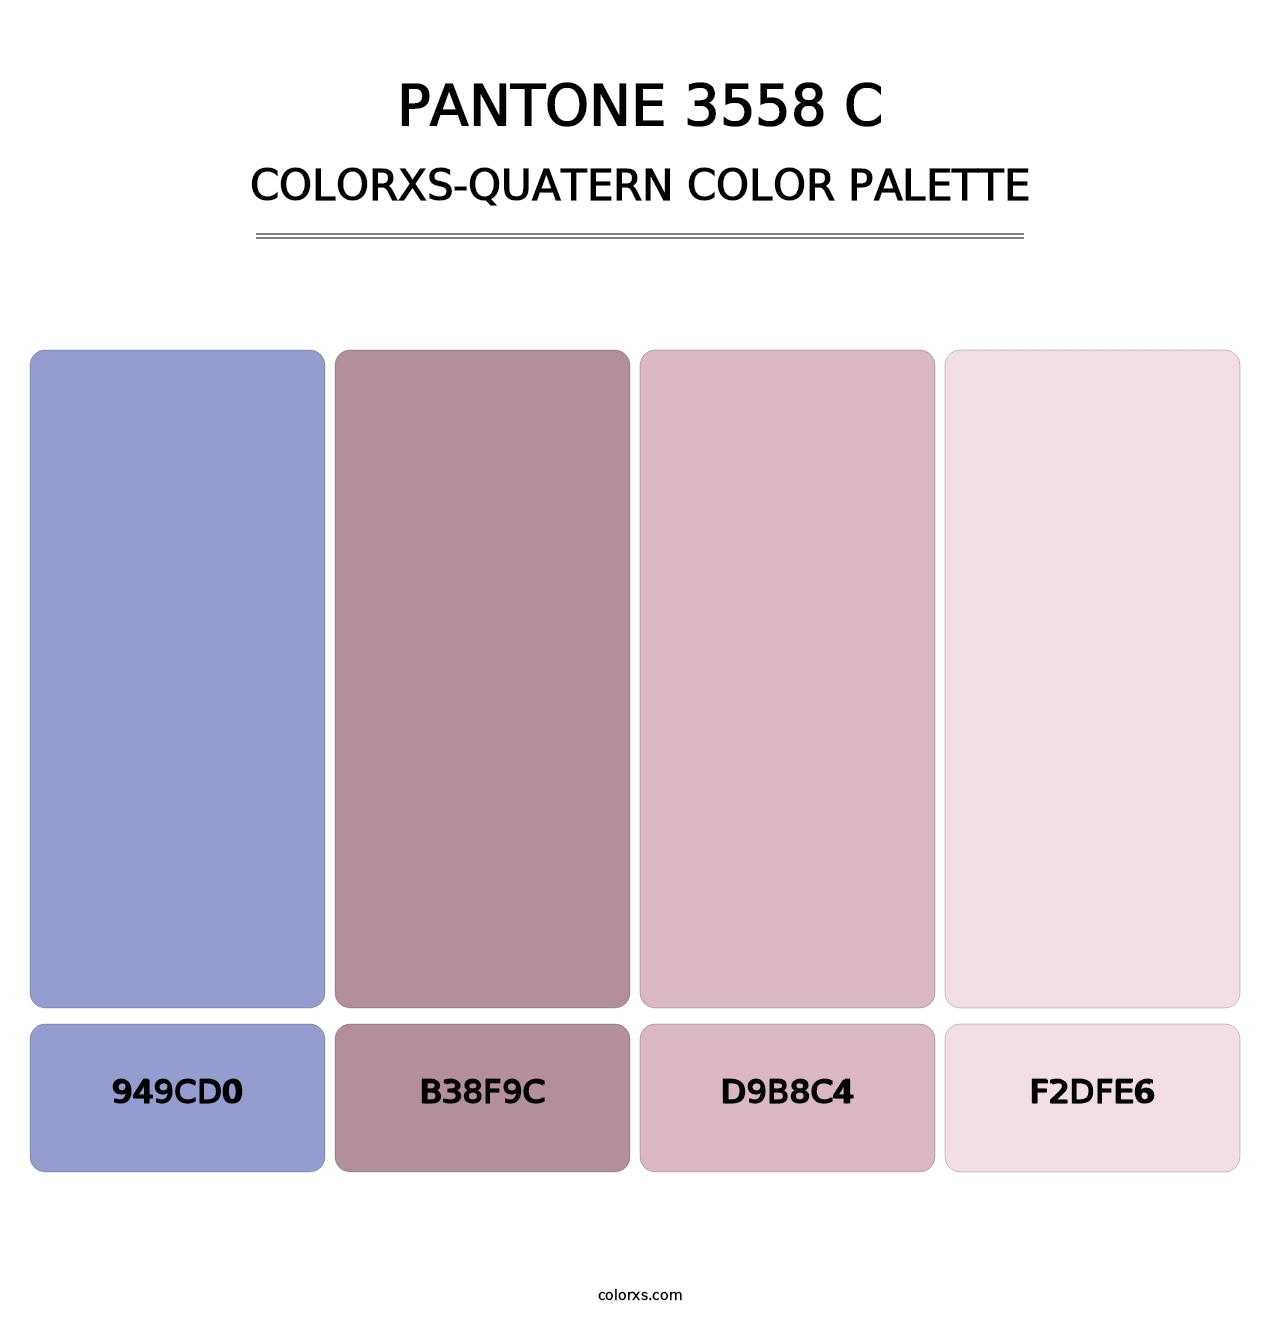 PANTONE 3558 C - Colorxs Quatern Palette